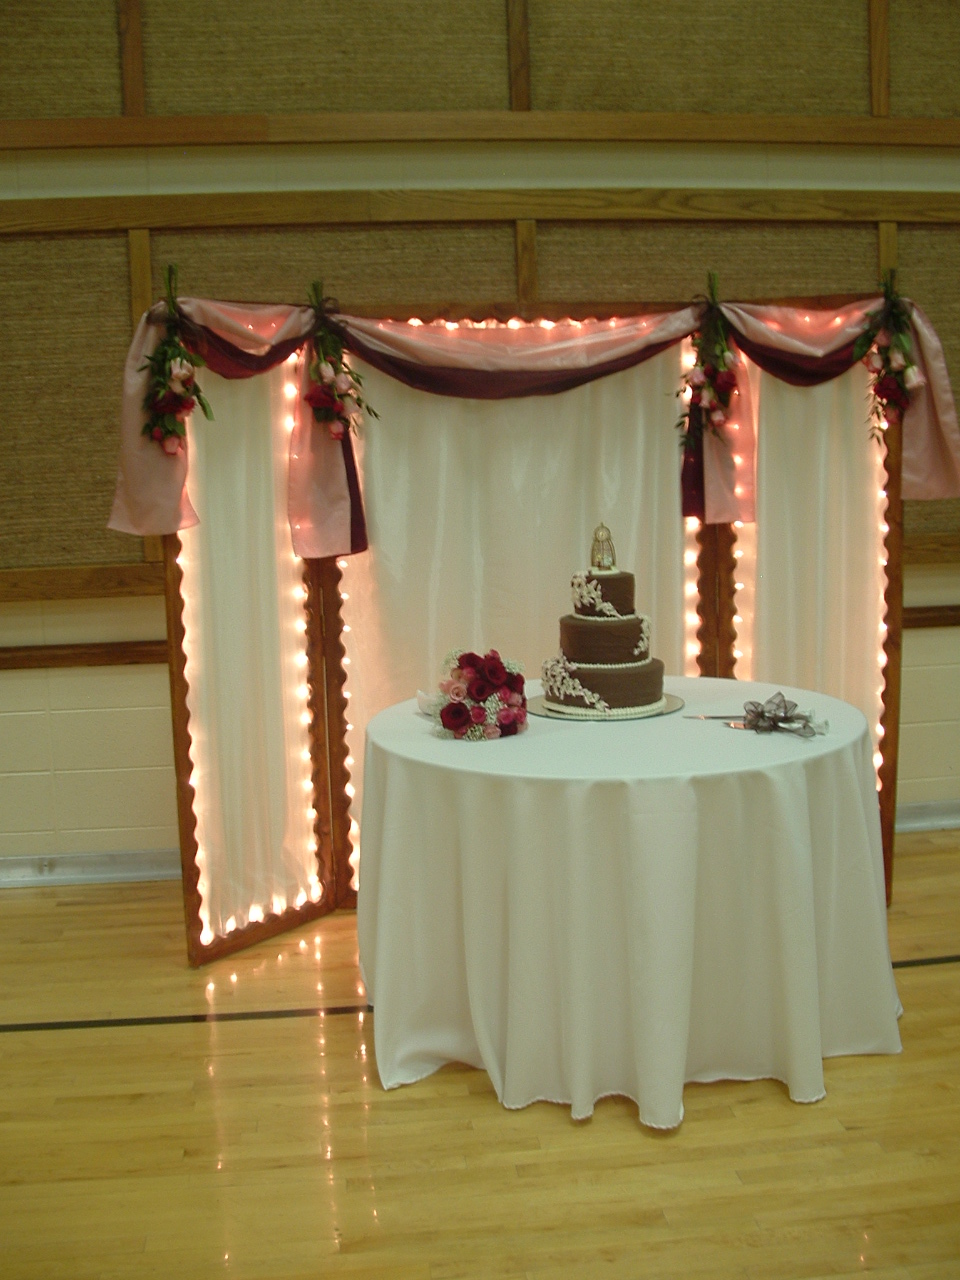 the wedding cake backdrop.